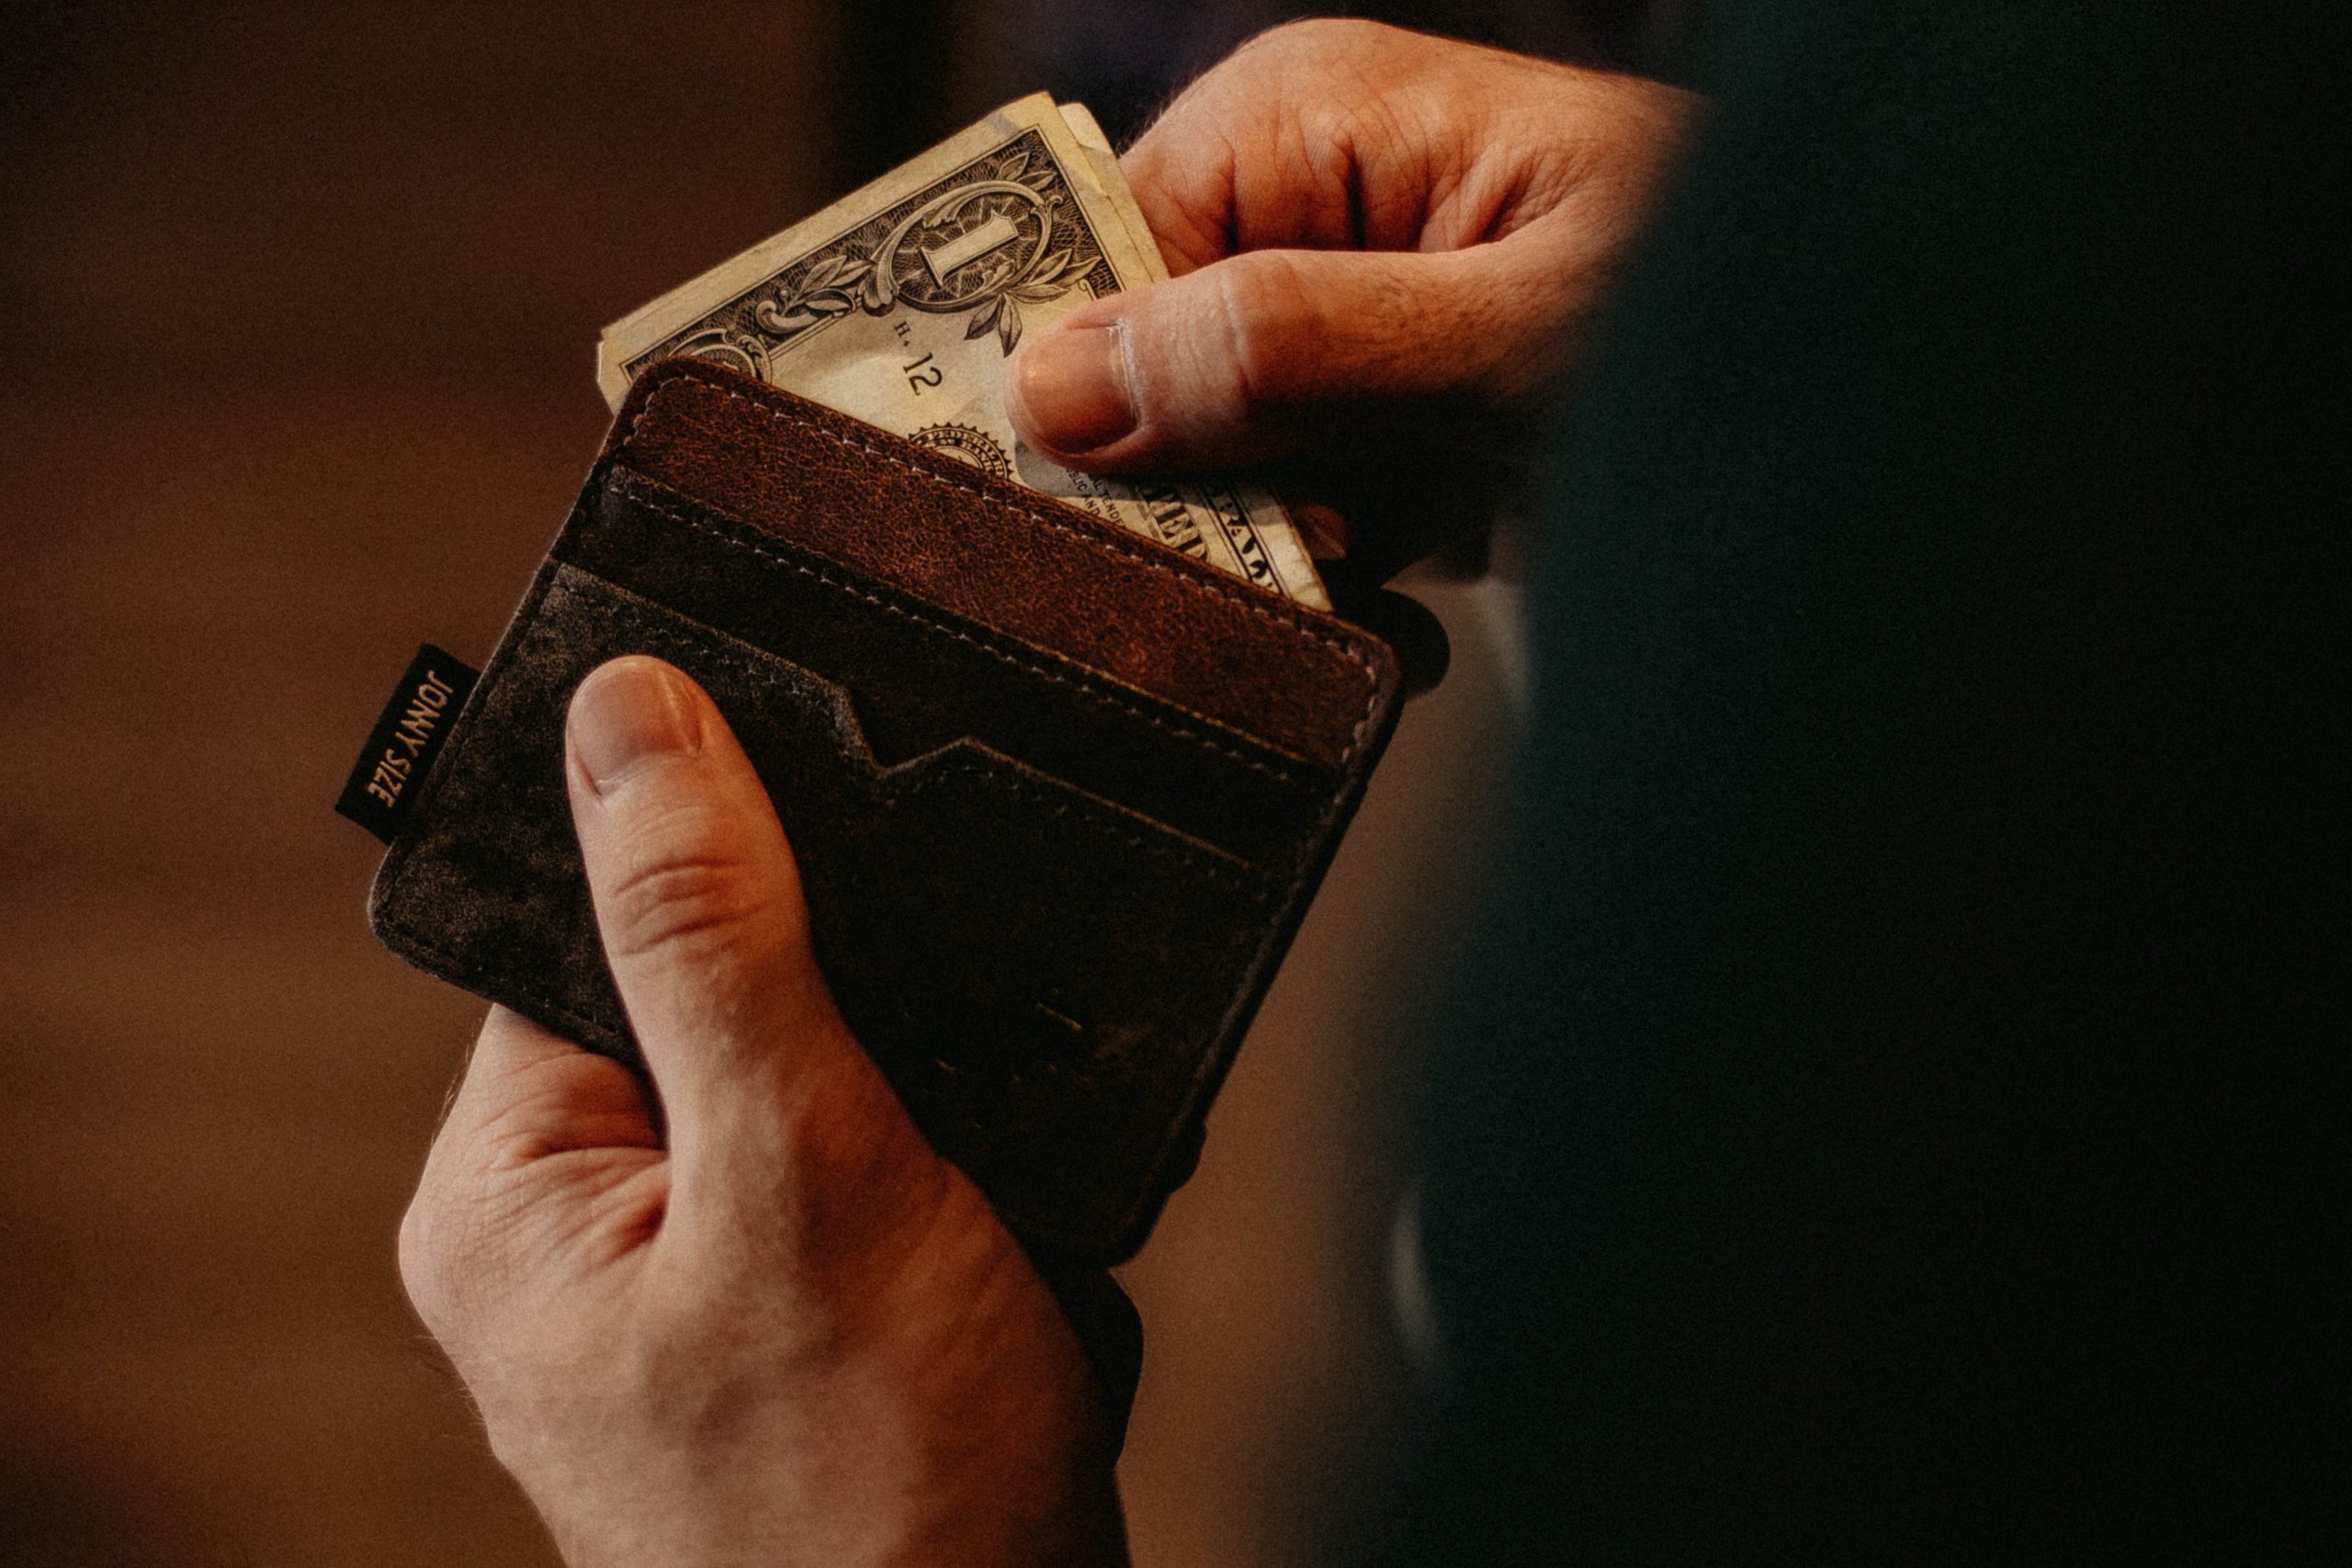 A imagem mostra uma carteira de couro marrom com uma nota sendo puxada pelas mãos de um homem, ilustrando o tema do texto